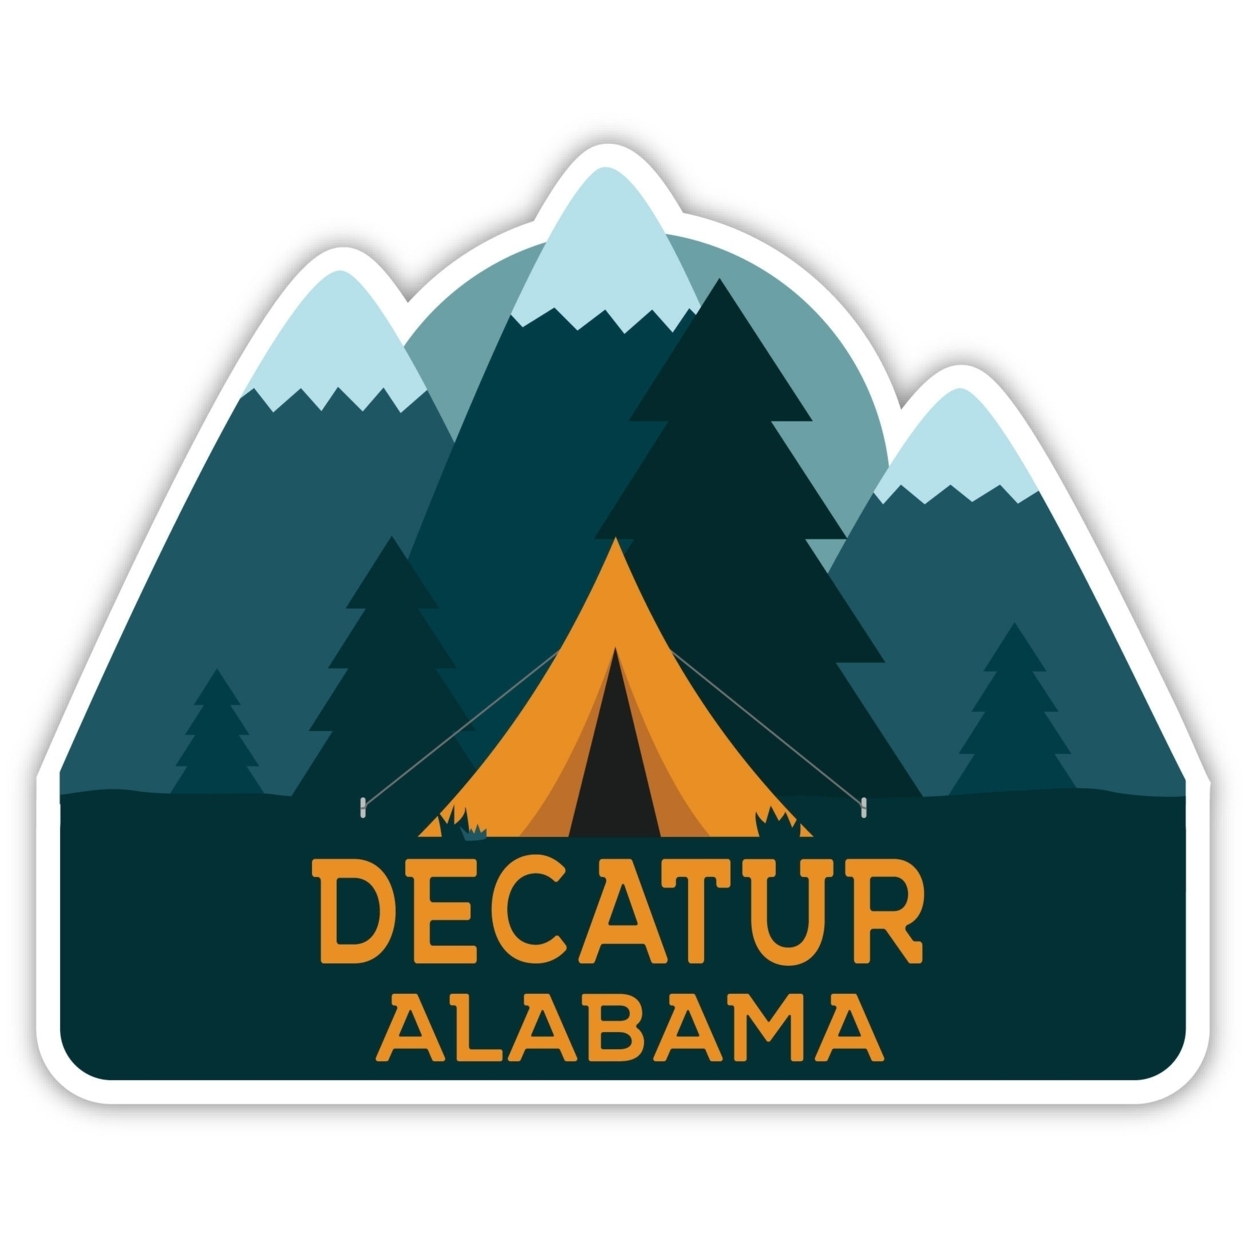 Decatur Alabama Souvenir Decorative Stickers (Choose Theme And Size) - Single Unit, 12-Inch, Tent